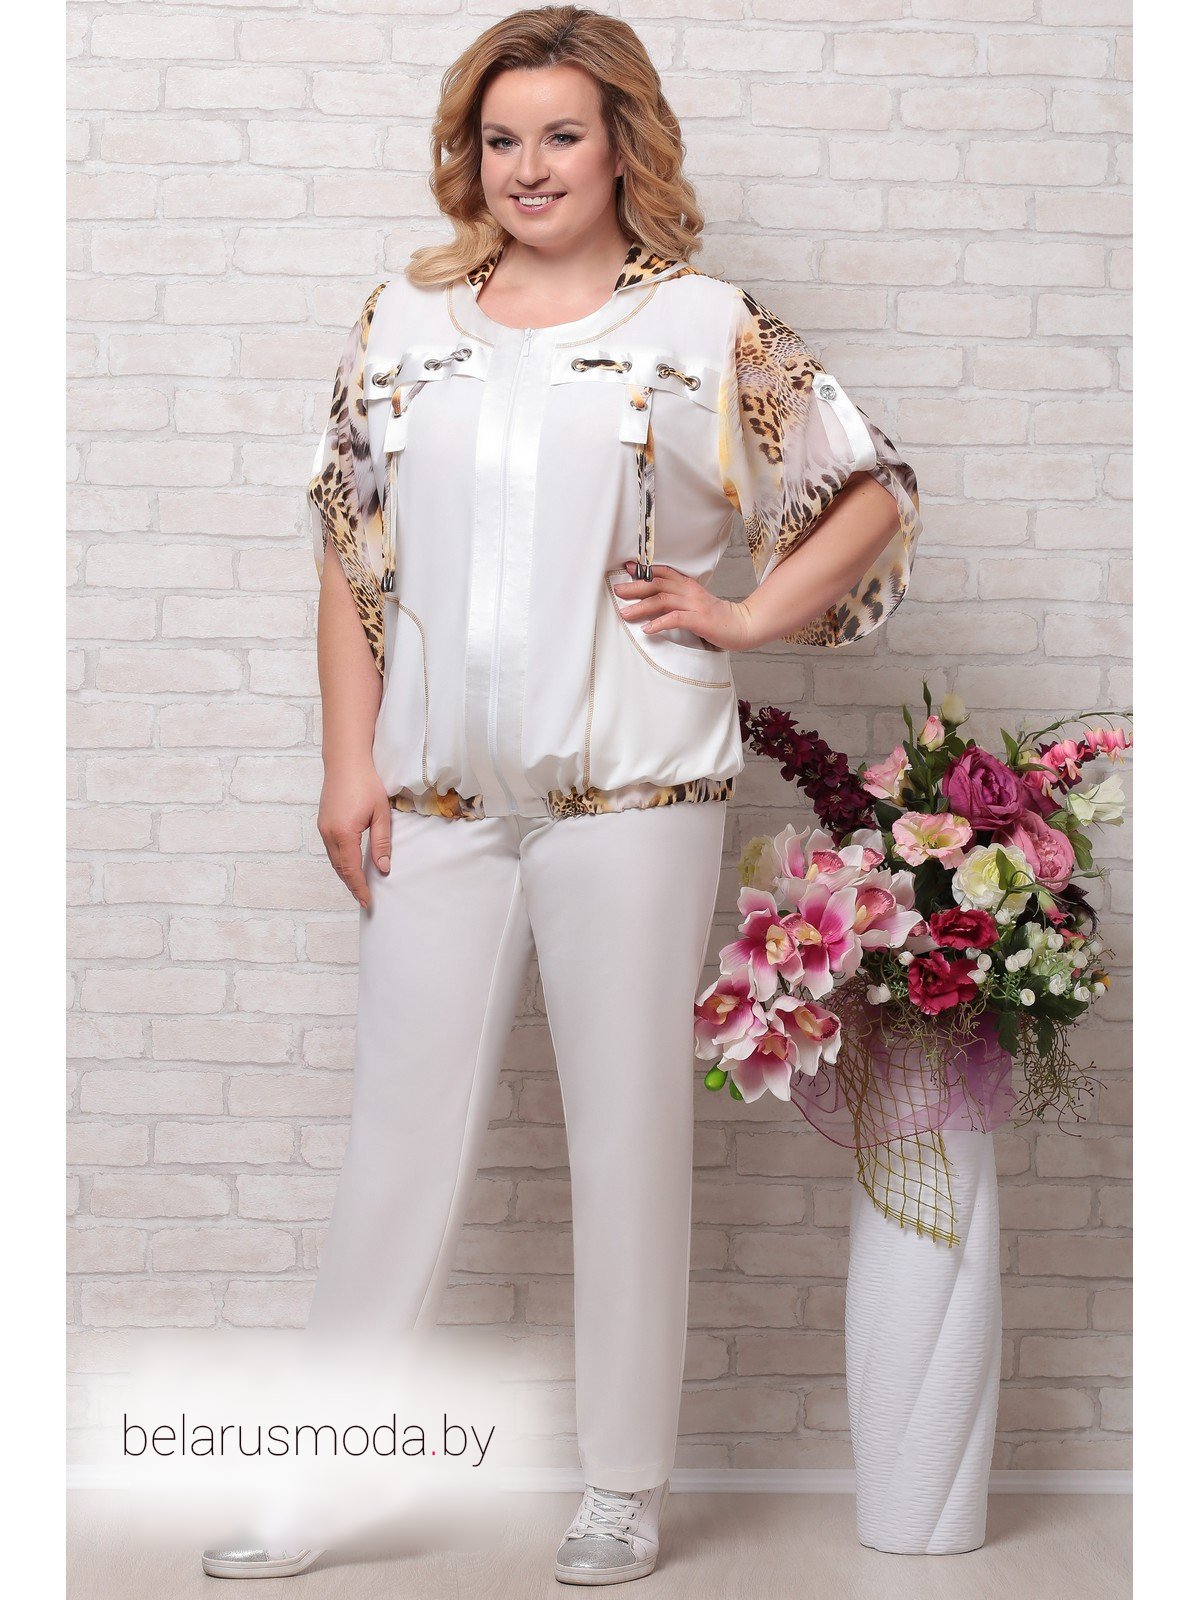 Летние брючные костюмы для женщин купить. Комплект Aira Style. Комплект брючный Aira Style. Белорусские брючные костюмы Aira Style 650. Костюм Aira Style модель 764.